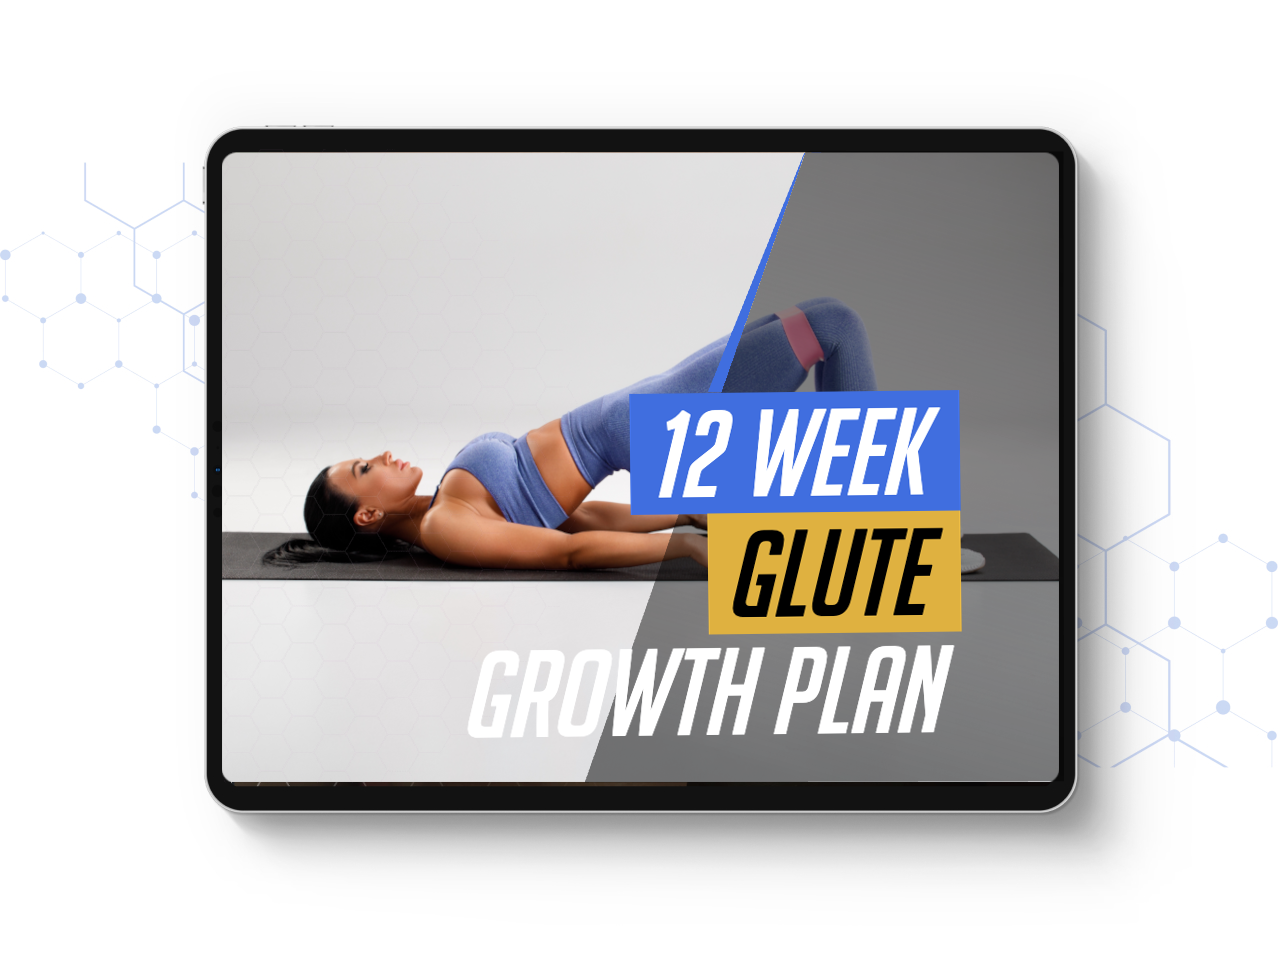 12 week glute growth plan